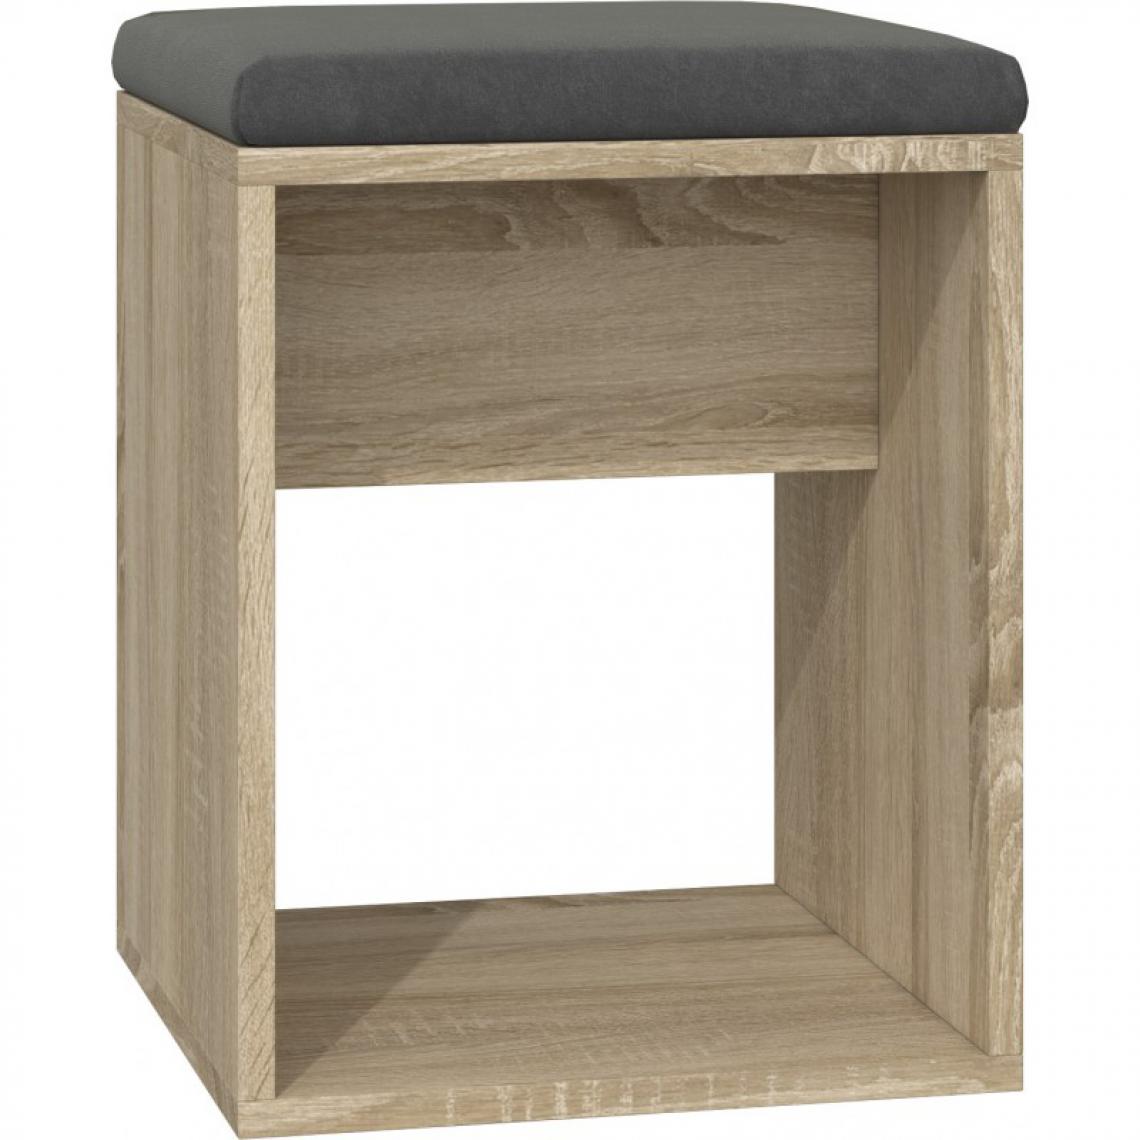 Hucoco - MATIAS | Tabouret moderne avec coussin | Design minimaliste | Dimensions : 51x35x35 | Léger, forme simple | Assise confortable - Chêne - Tabourets